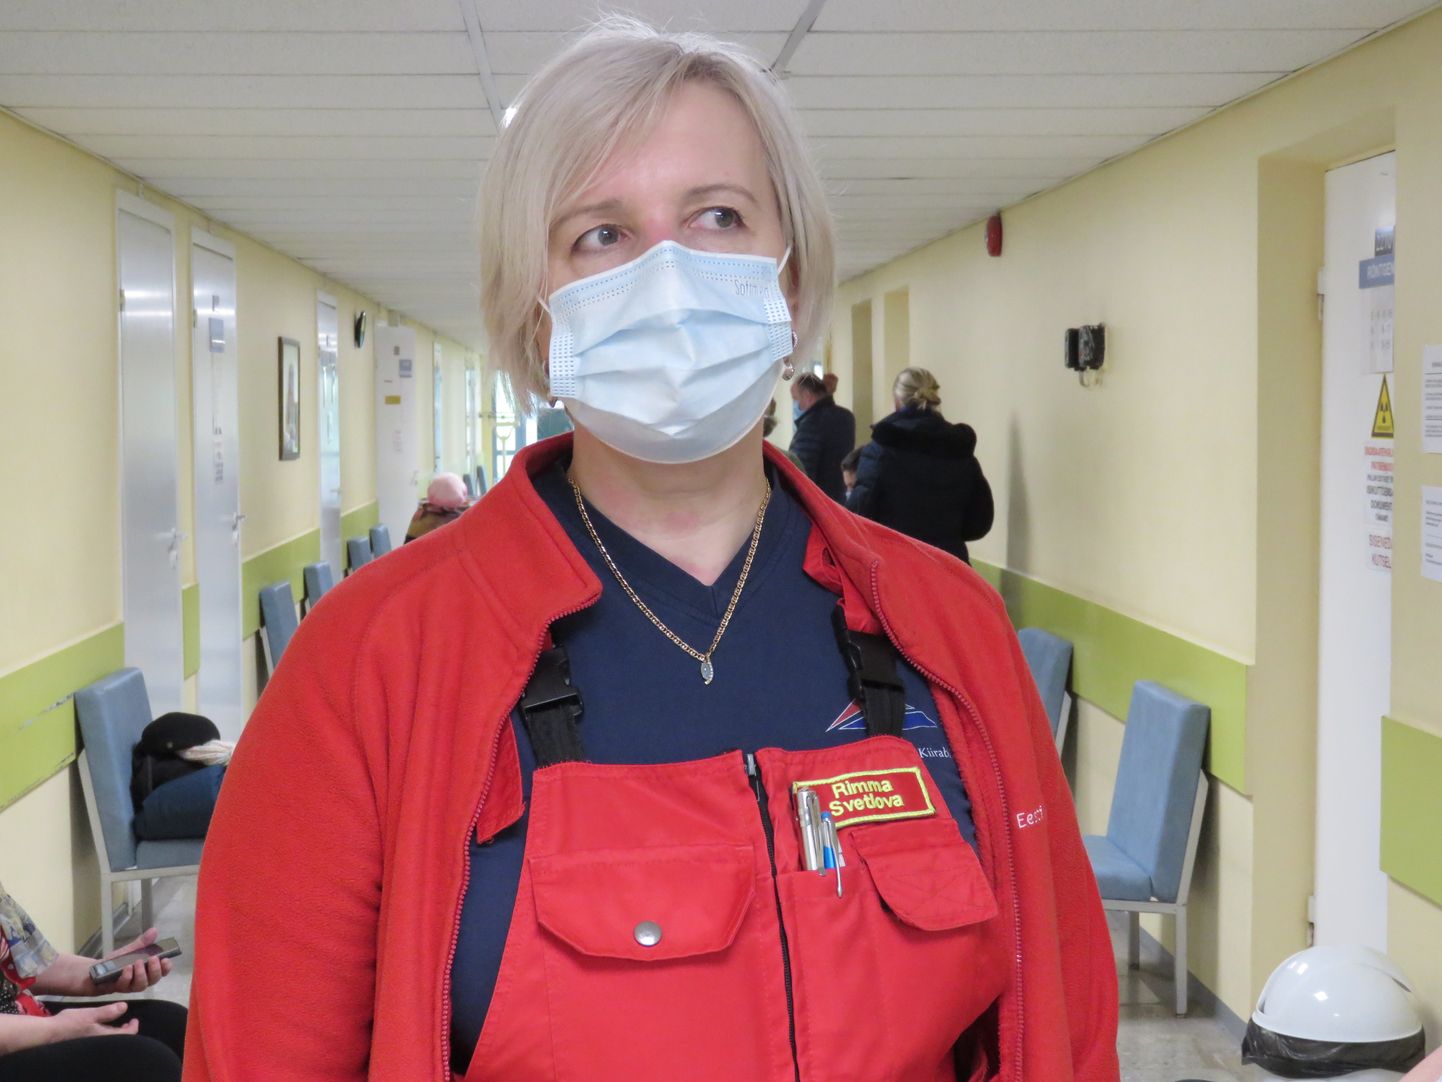 Vaktsineerida saab ka Põlva haiglas. Pildil õendusjuht Rimma Svetlova, kes on ka kiirabitöötaja.